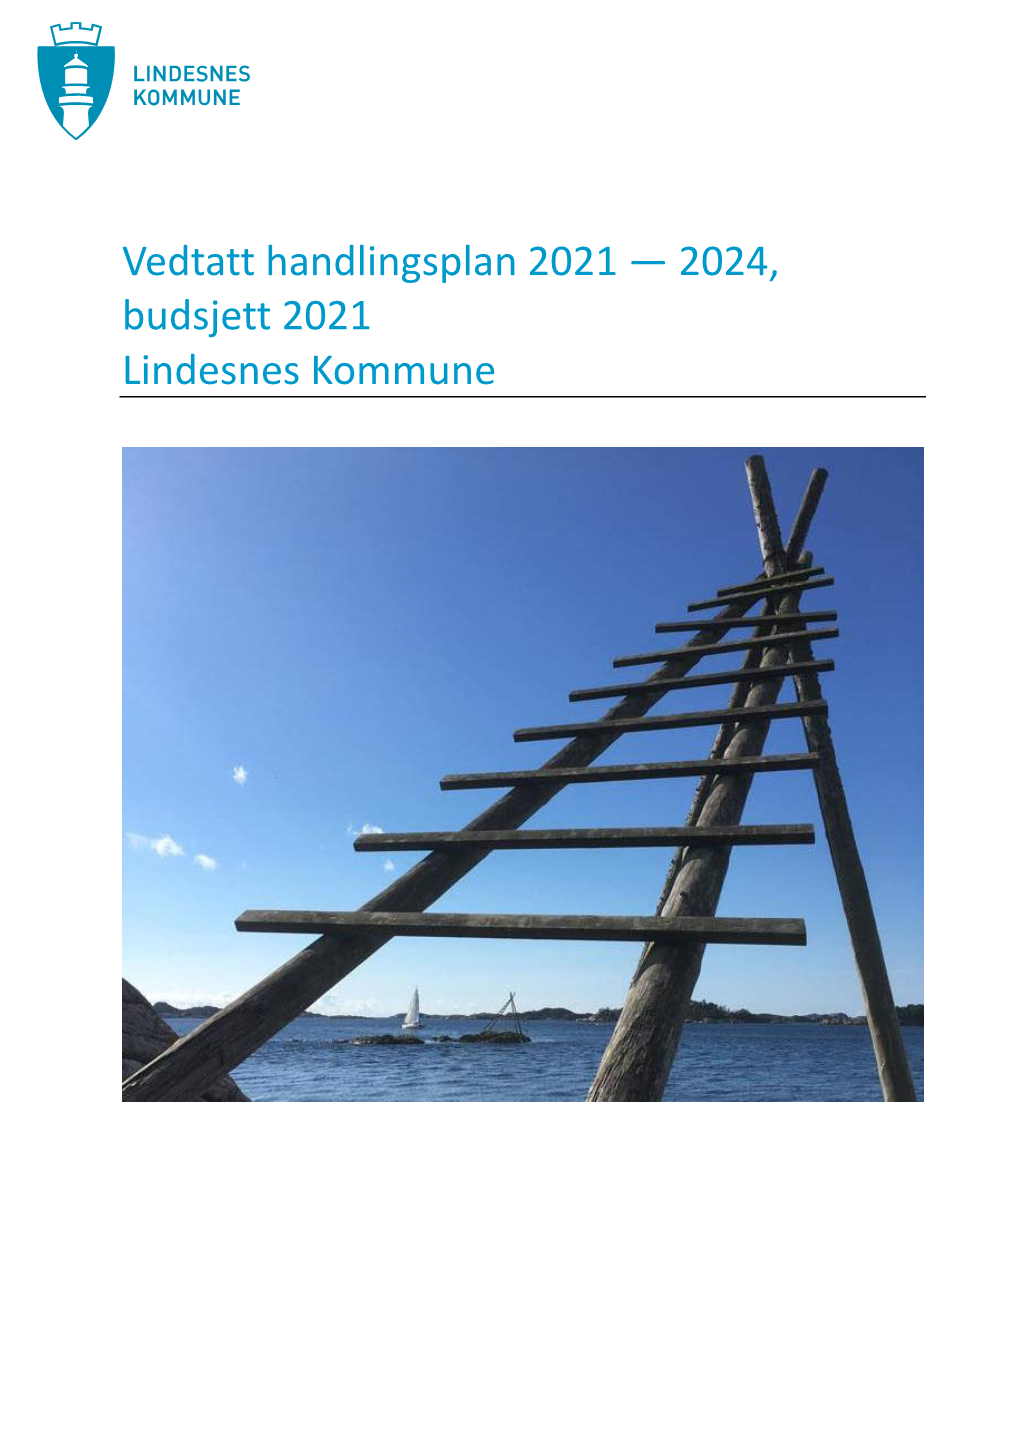 Vedtatt Handlingsplan 2021 — 2024, Budsjett 2021 Lindesnes Kommune